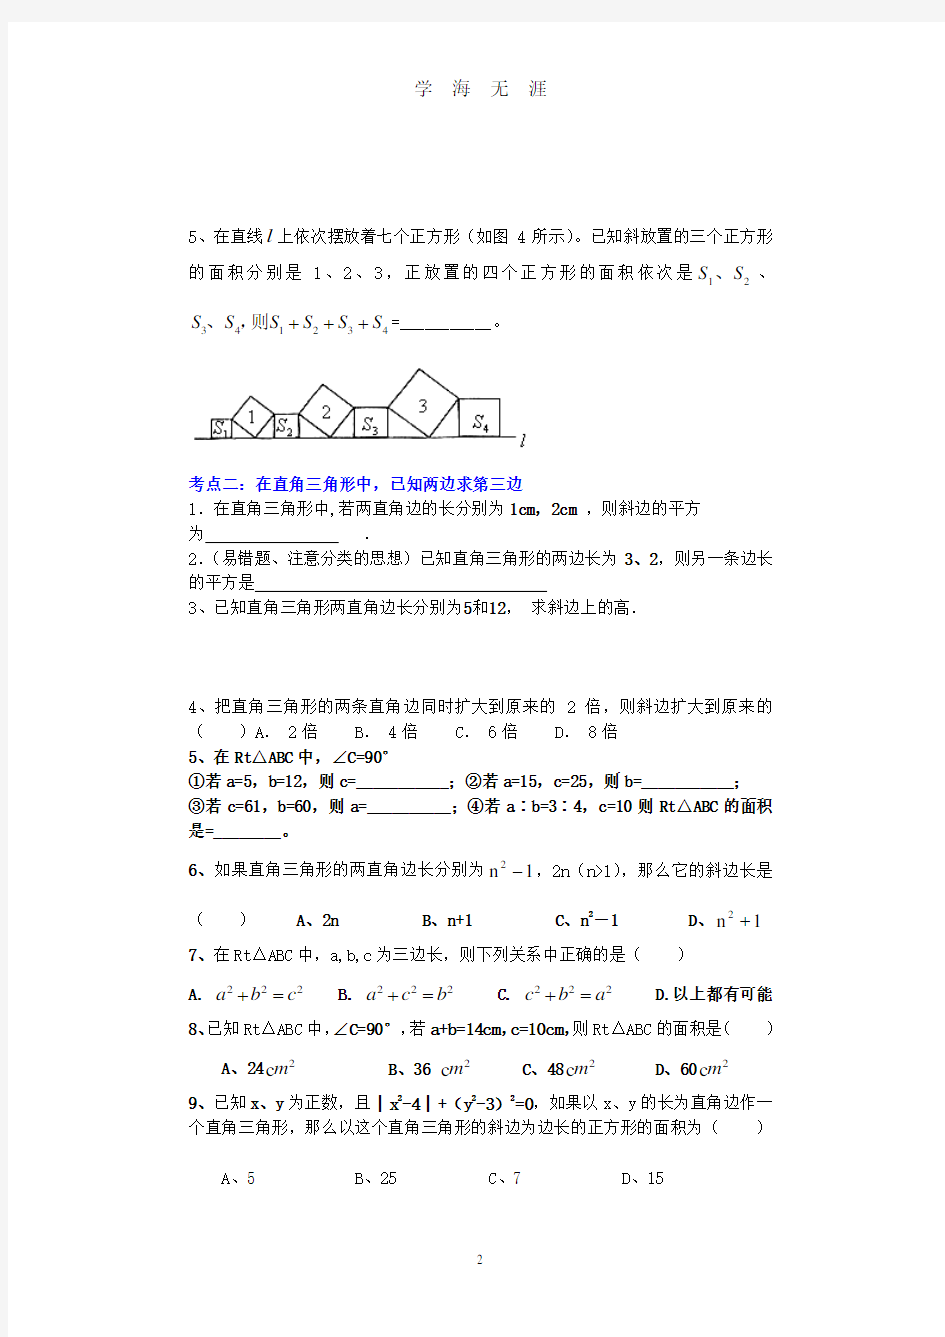 《勾股定理》典型例题.pdf